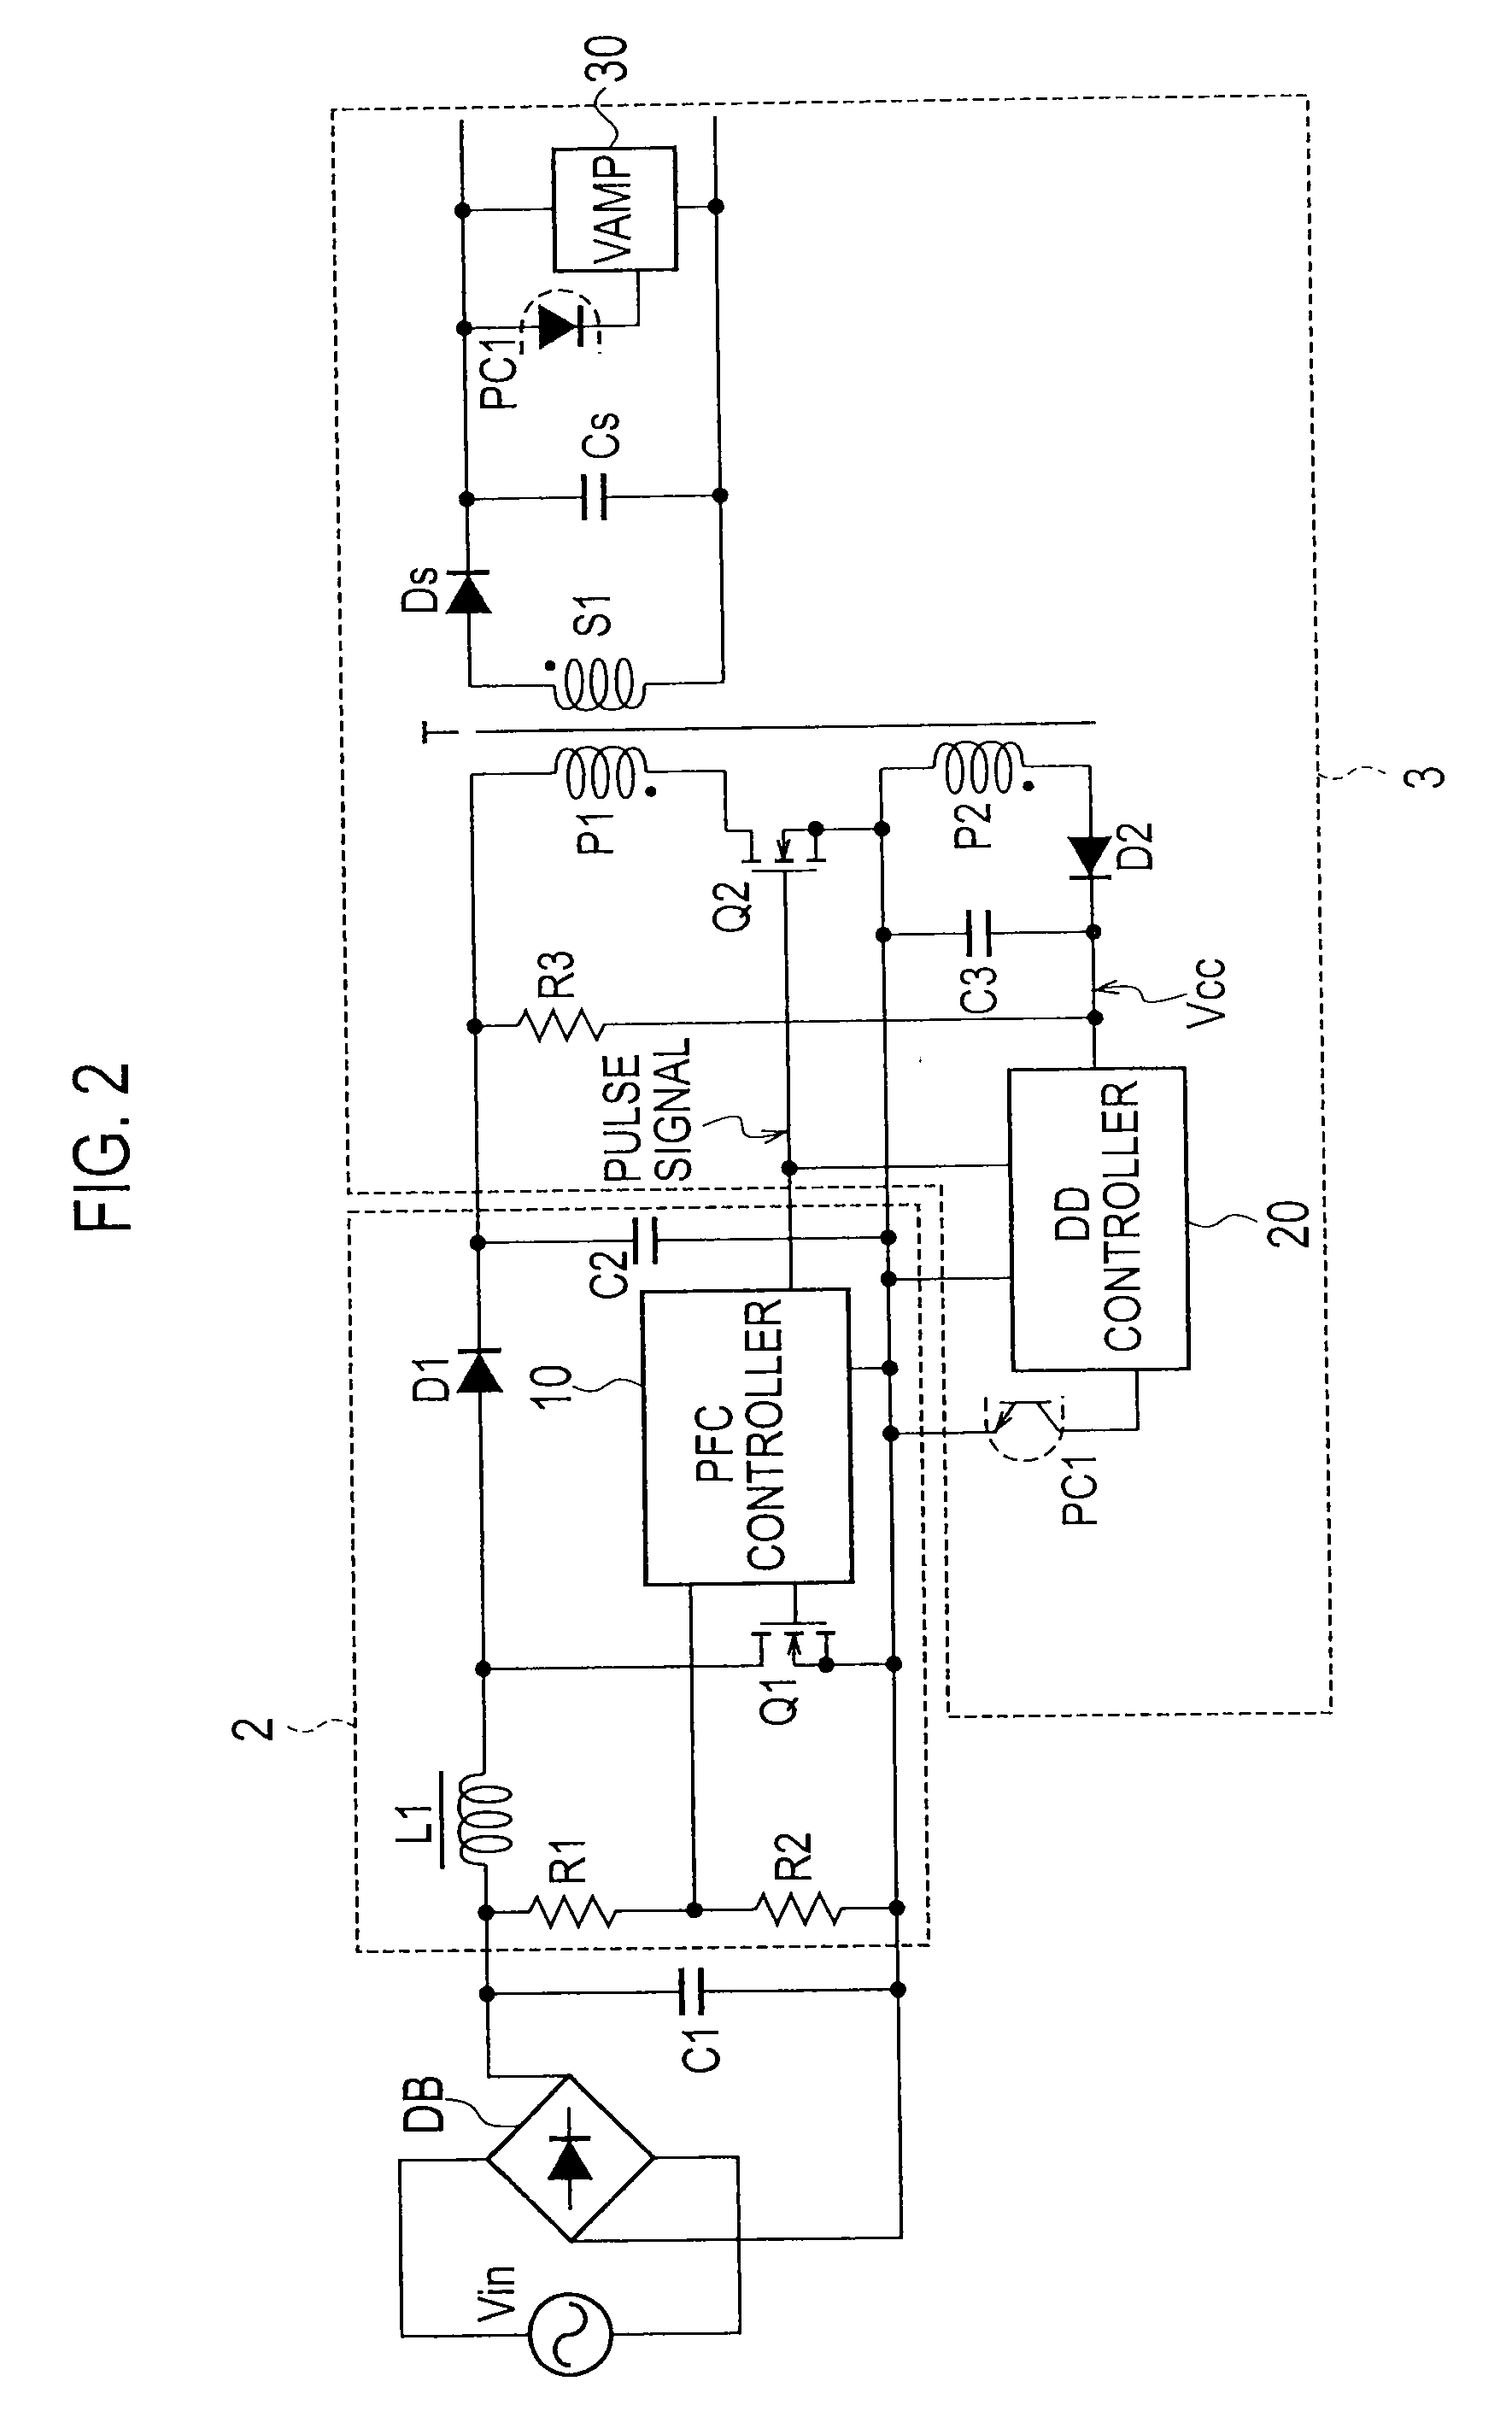 Power factor correction circuit